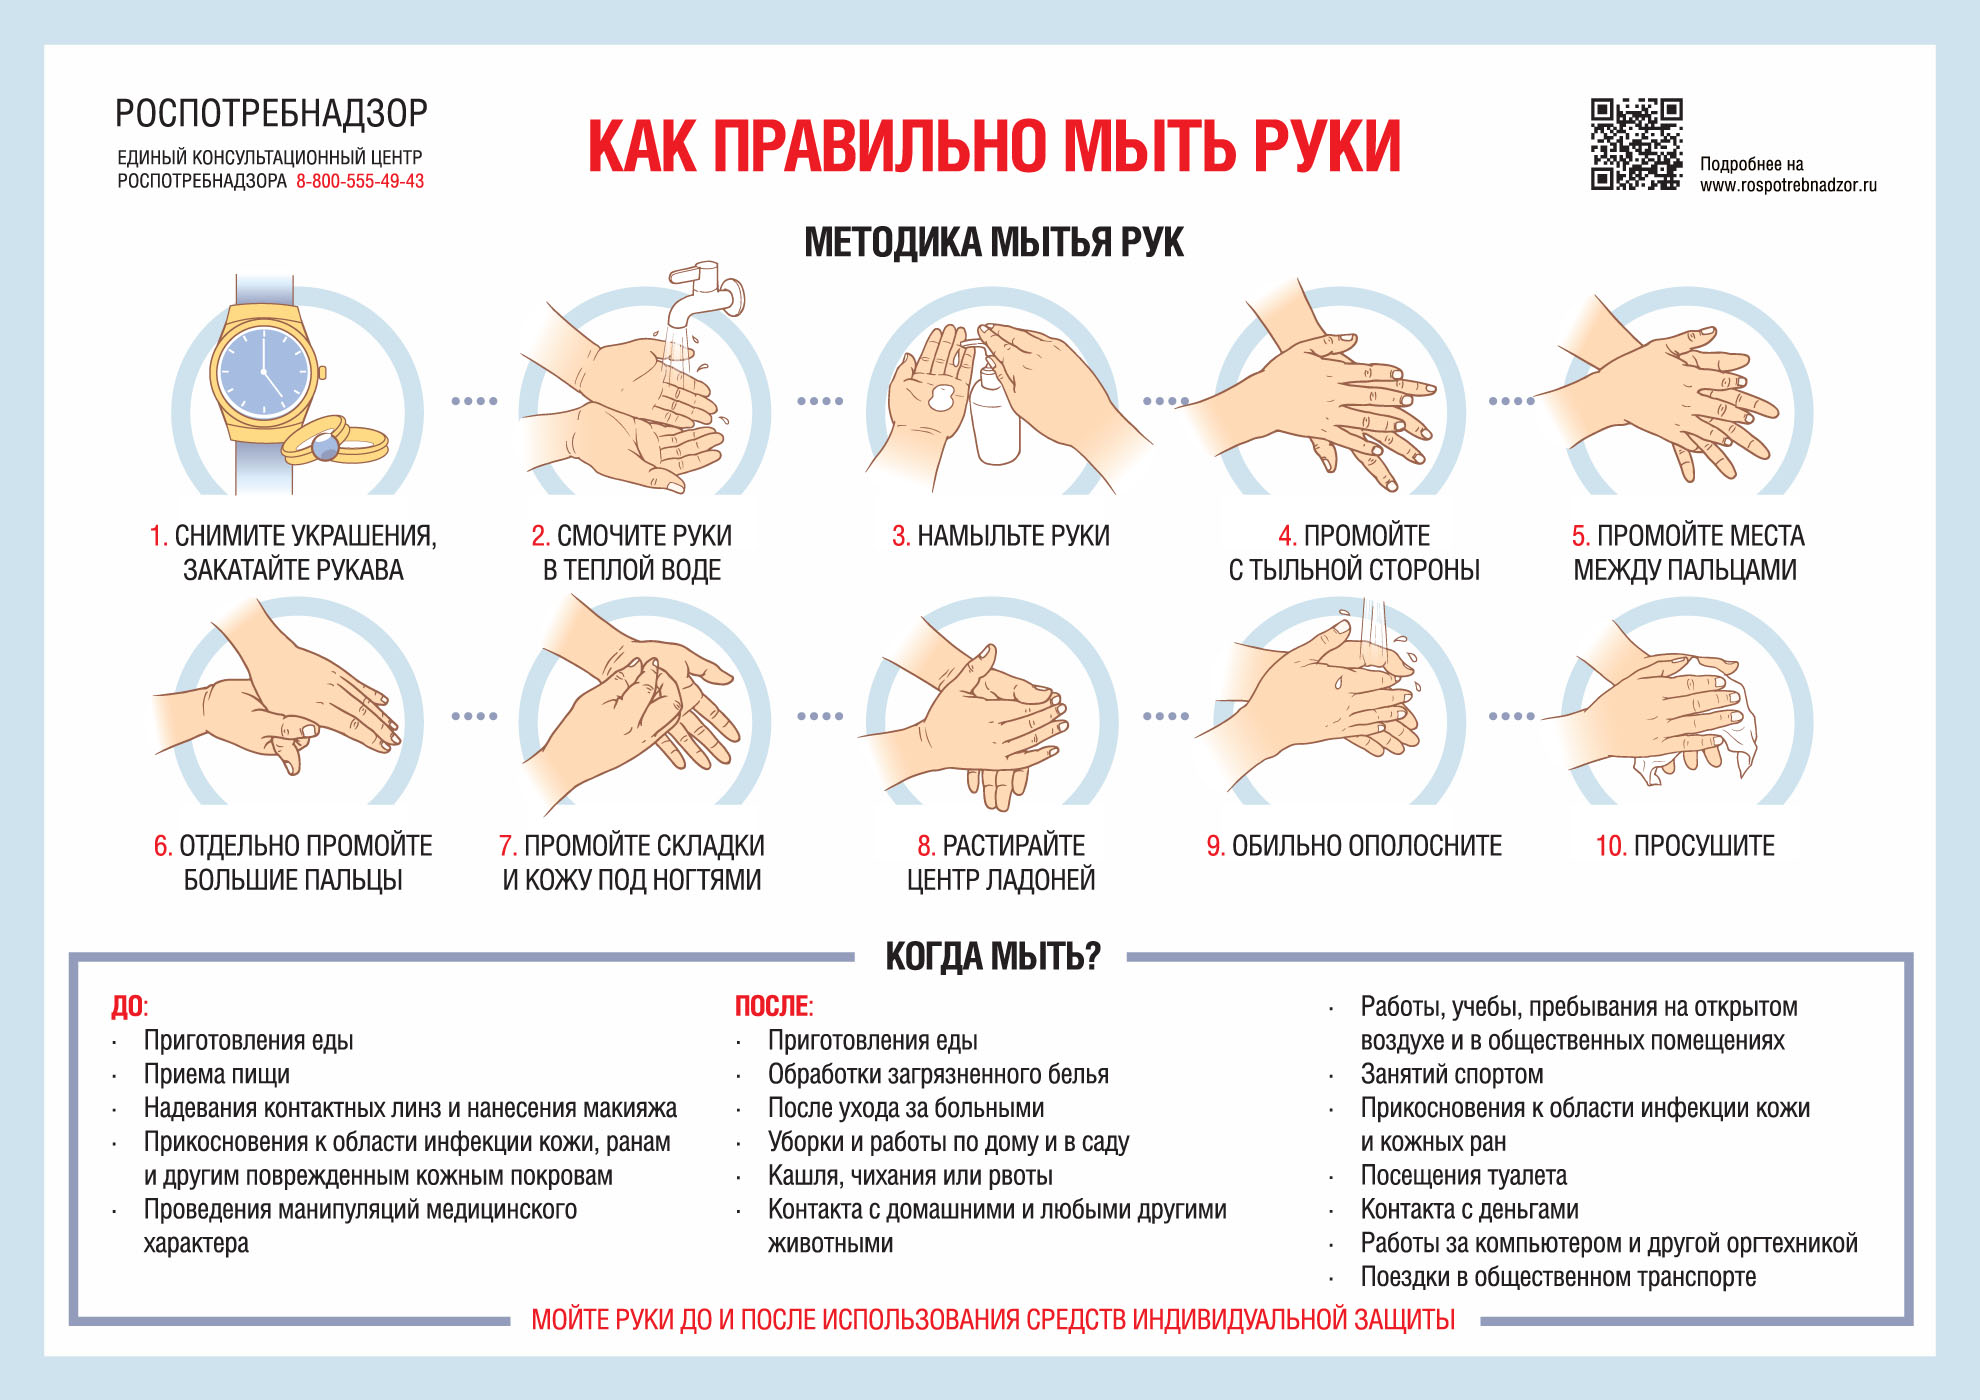 Доклад: Профилактика общественно опасных действий психически больных в Новгородской области